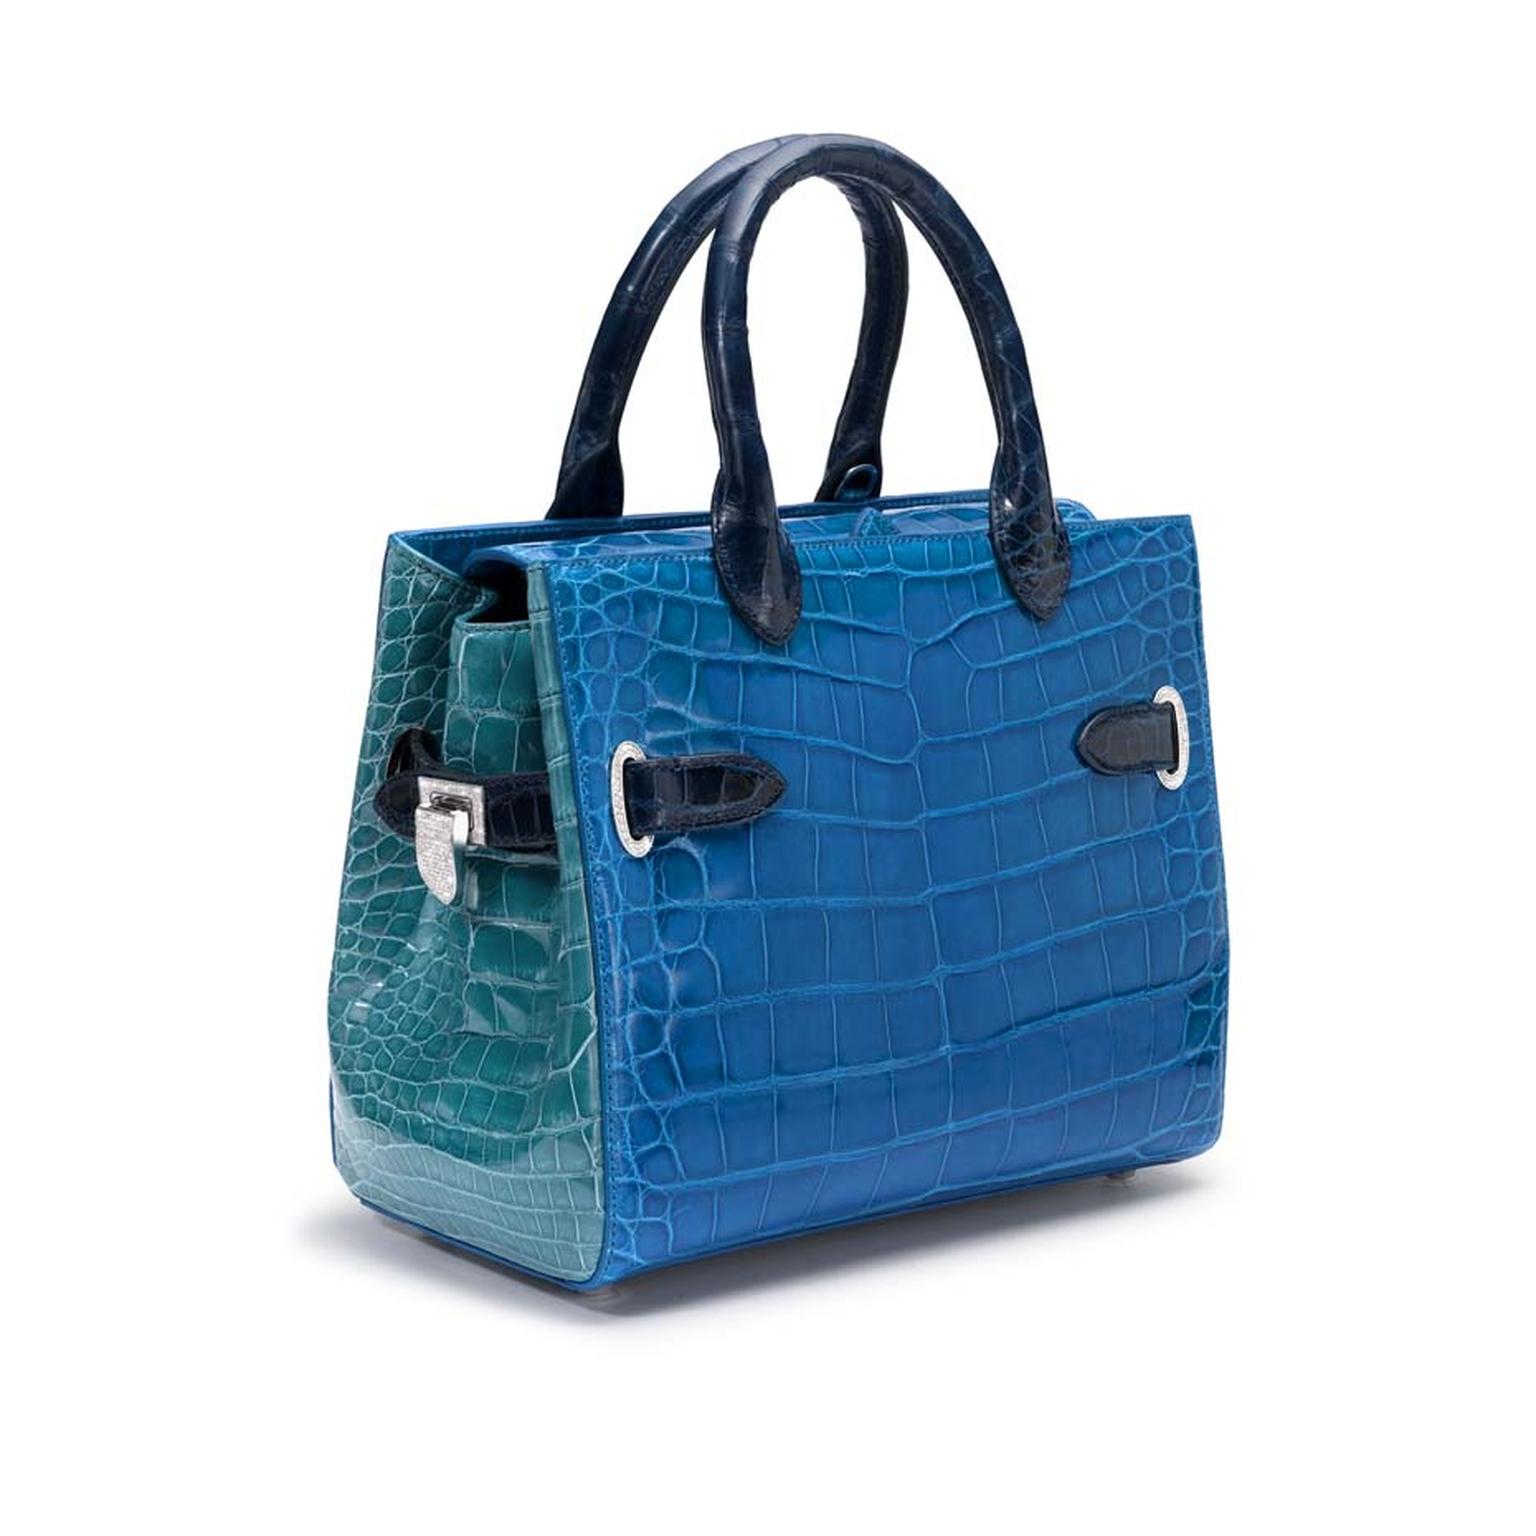 Asprey's 2013 Private collection jewel encrusted handbag.